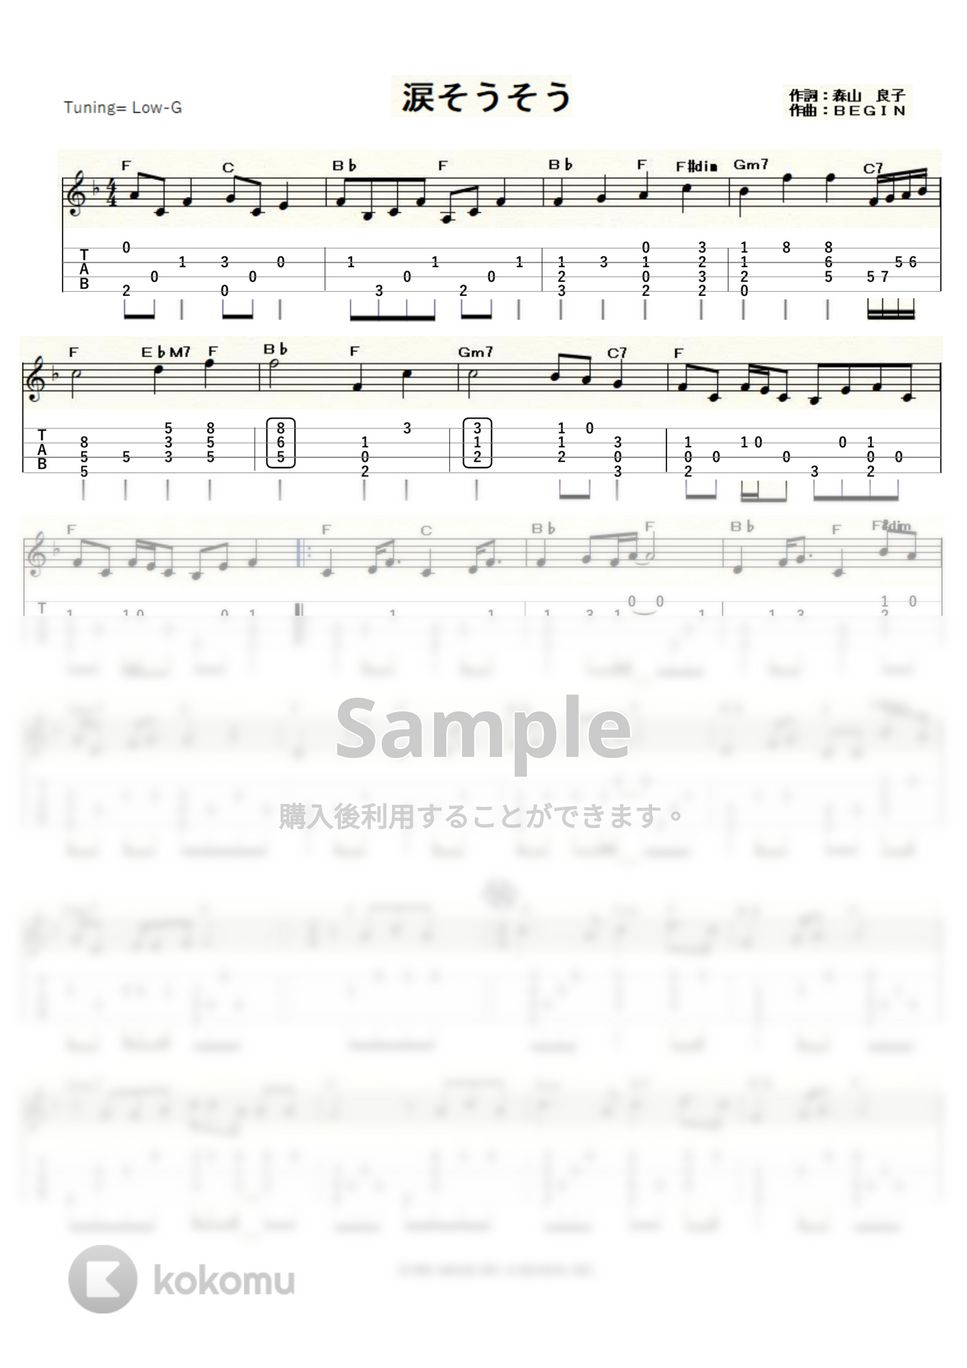 夏川りみ - 涙そうそう (ｳｸﾚﾚｿﾛ / Low-G / 中～上級) by ukulelepapa